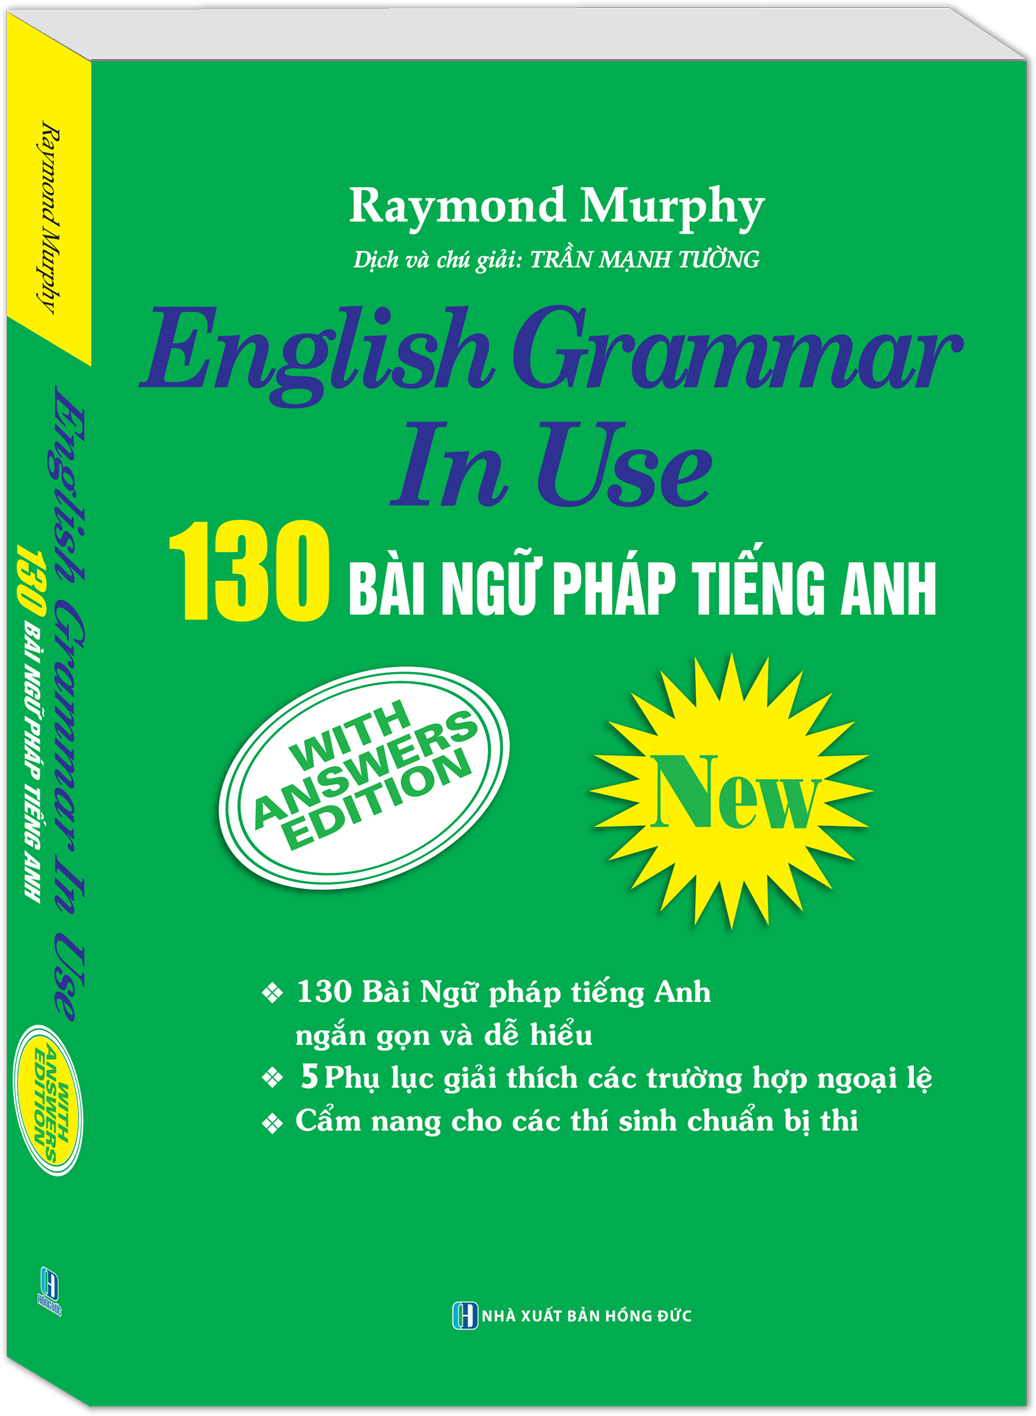 130 Bài Ngữ Pháp Tiếng Anh - English Grammar In Use (Cẩm Nang Cho Thí Sinh Chuẩn Bị Thi)